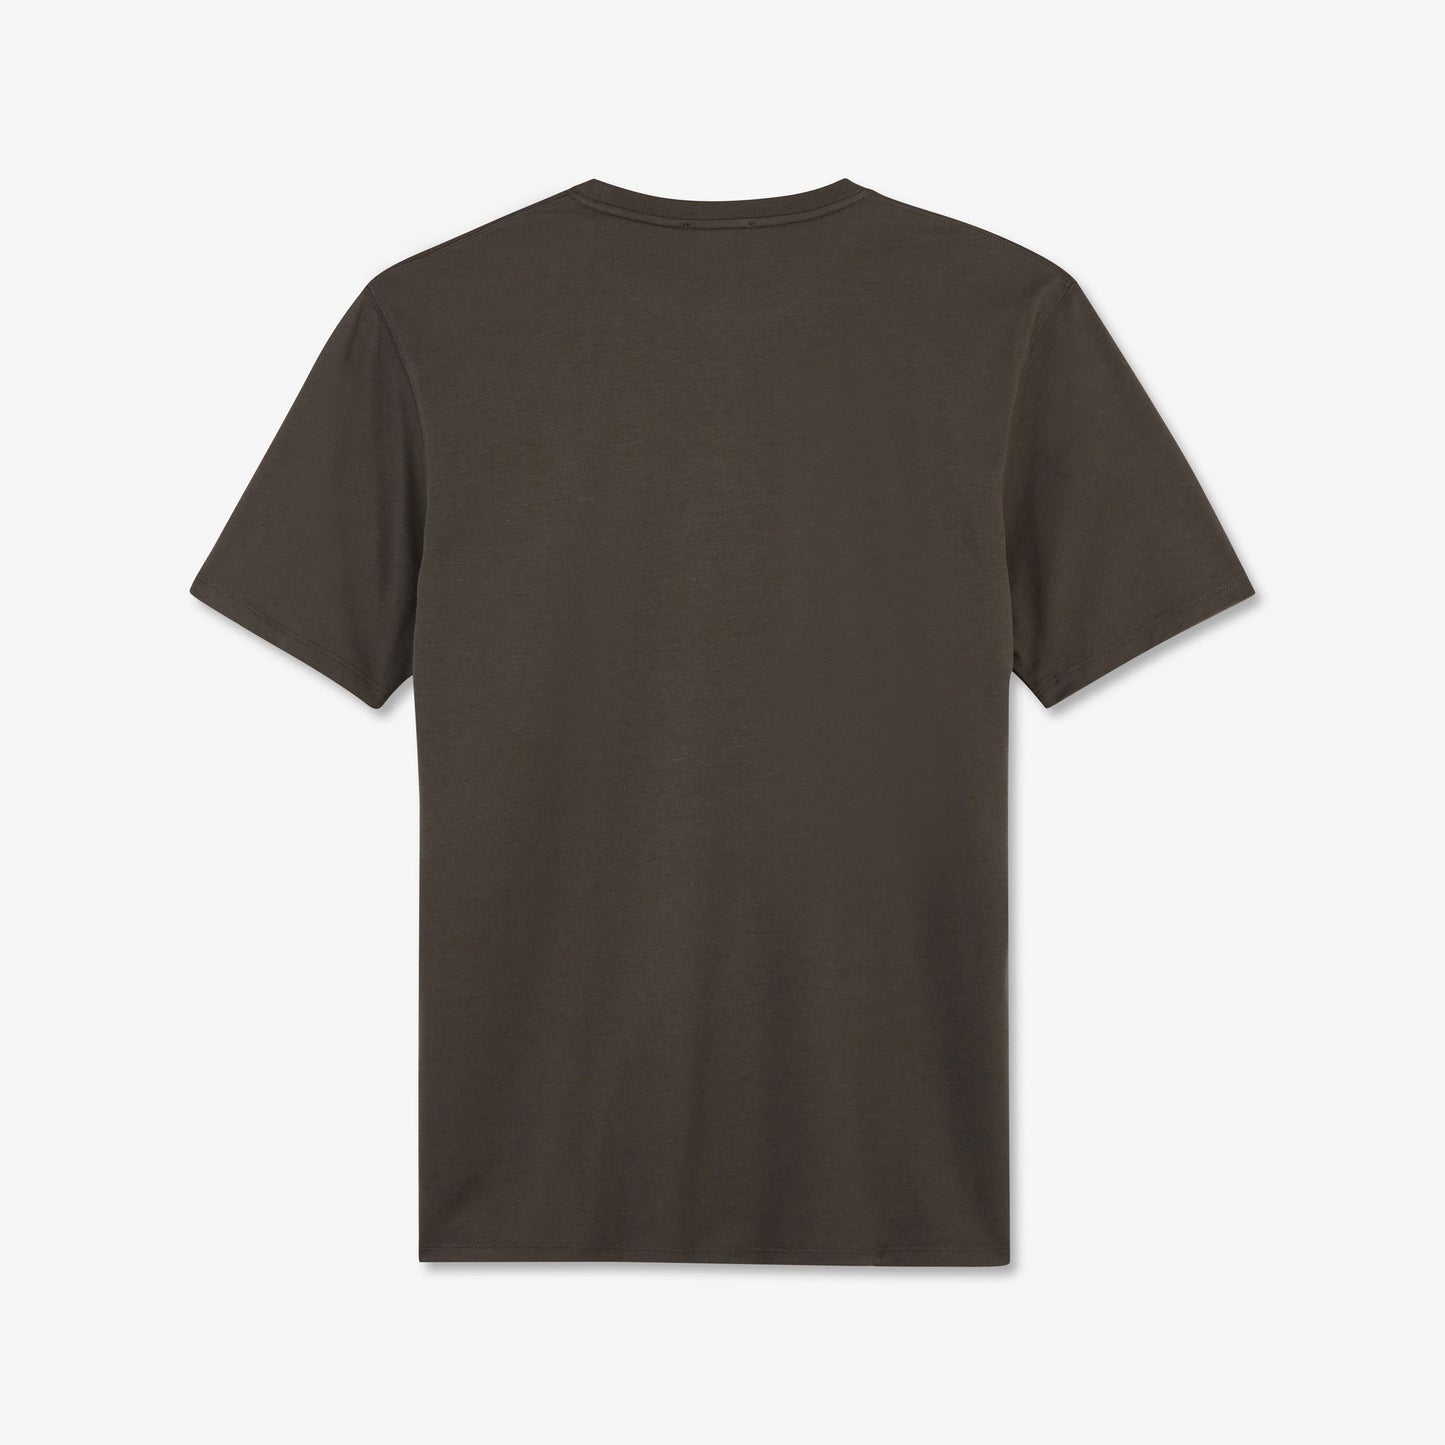 T-shirt kaki foncé manches courtes en coton Pima